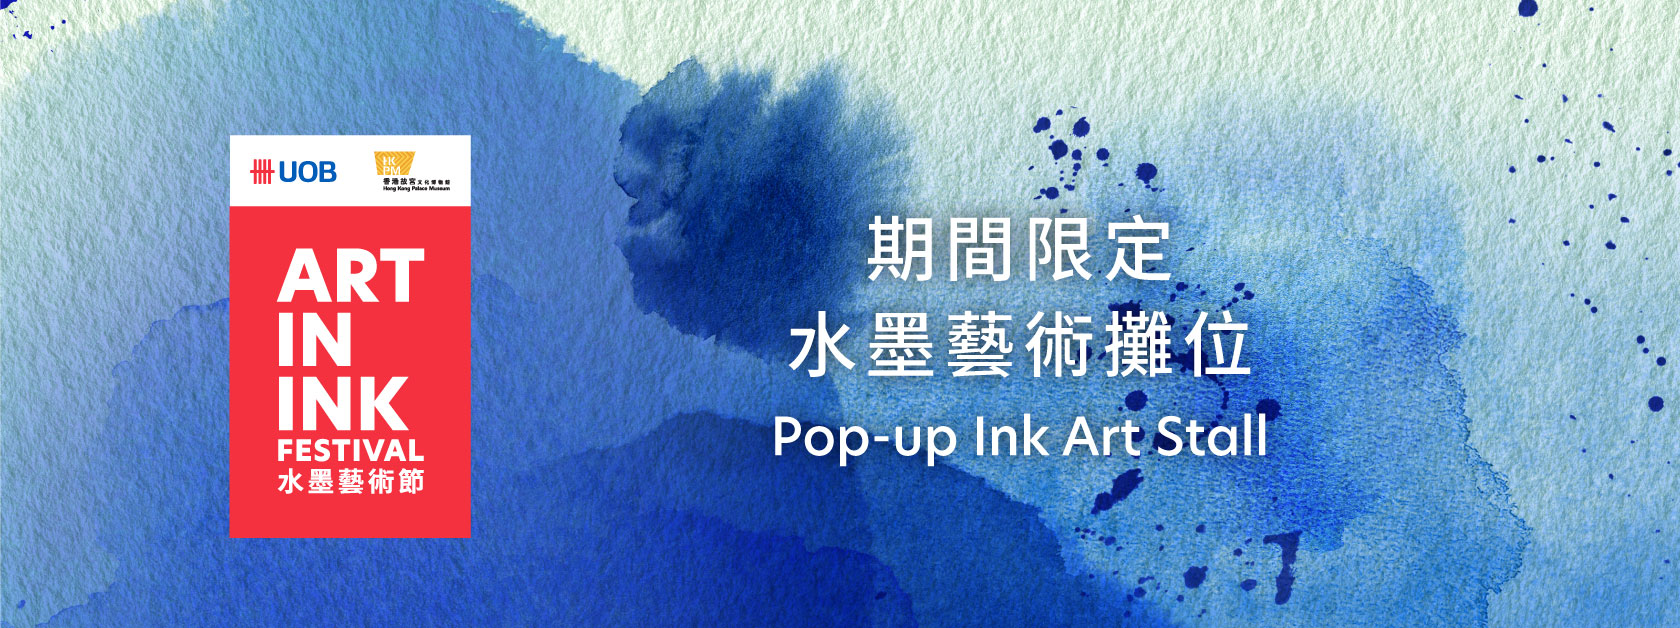 Pop-up Ink Art Stall